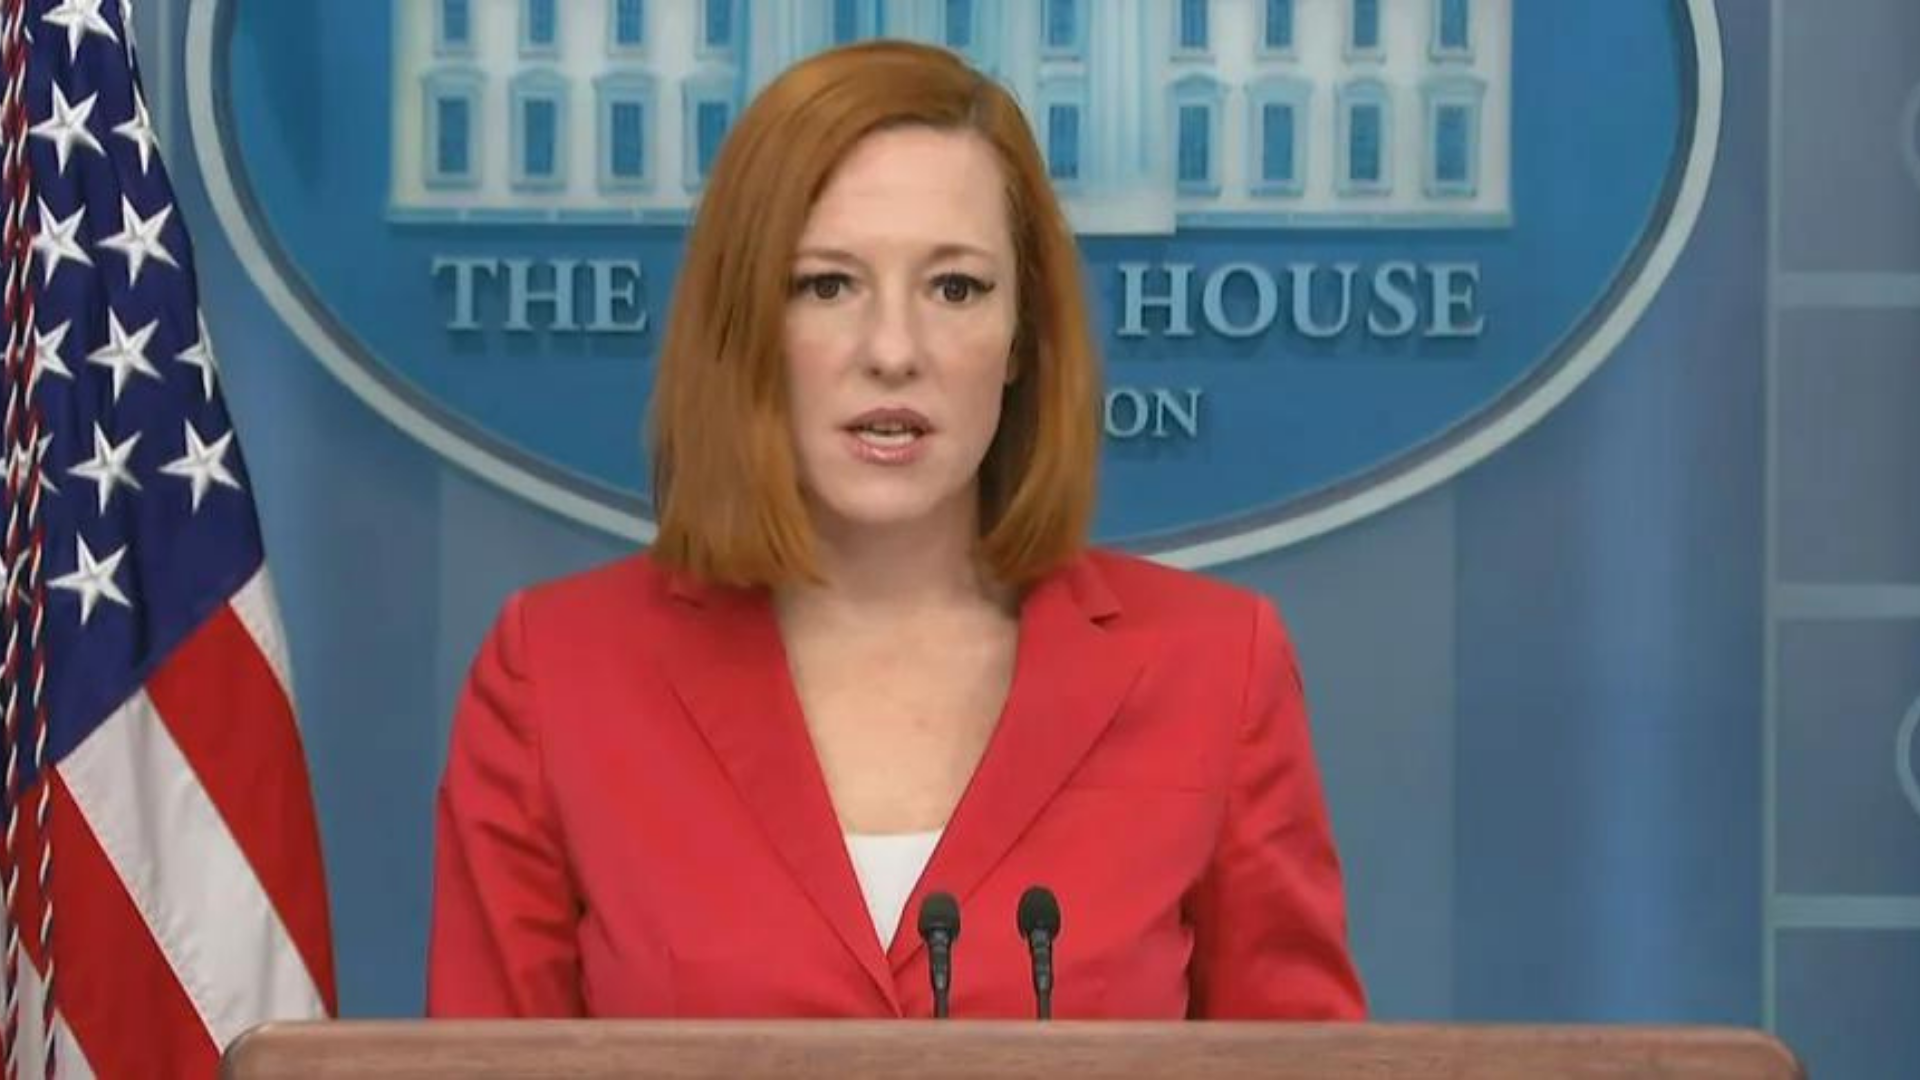 EUA dizem que Rússia mente sobre laboratórios de armas químicas. Foto da secretária da Casa Branca, ela é branca, tem cabelo ruivo e olhar sério.